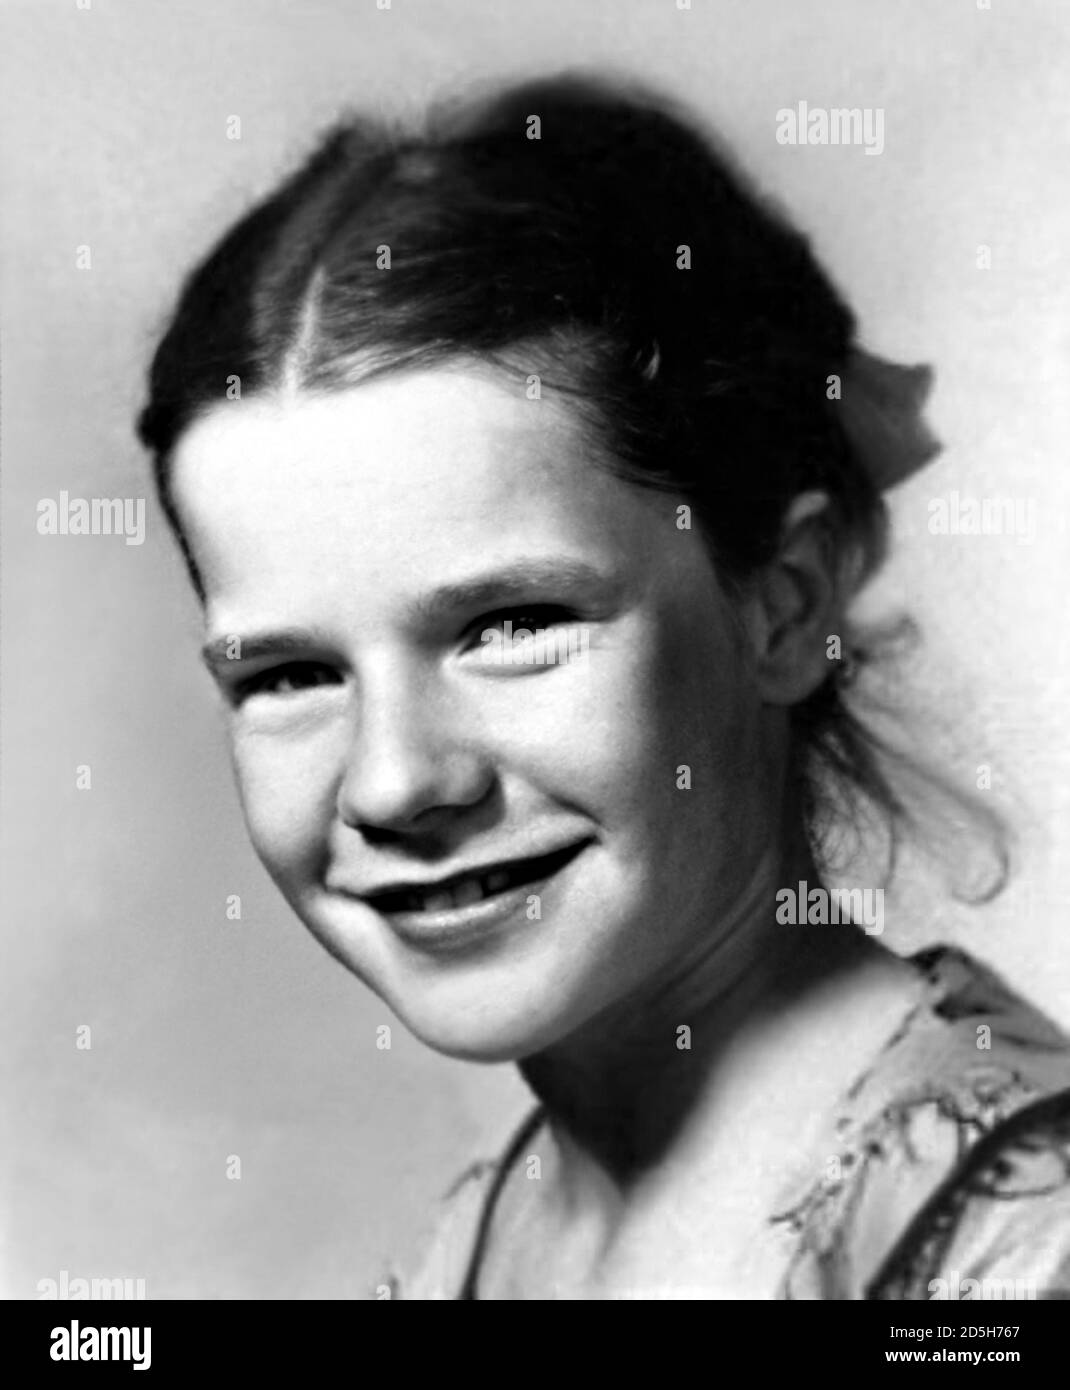 1952 c., USA : die gefeierte amerikanische Rockstar-Sängerin JANIS JOPLIN ( 1943 - 1970 ) als junges Mädchen im Alter von 9 . Unbekannter Fotograf. - GESCHICHTE - FOTO STORICHE - personalità da bambino Bambina Bambini da giovane - Persönlichkeit Persönlichkeiten als jung - INFANZIA - KINDHEIT - BAMBINO - BAMBINA - BABY - BAMBINI - KINDER - KIND - POPMUSIK - SEELE - MUSICA - Cantante - ROCKSTAR --- ARCHIVIO GBB Stockfoto